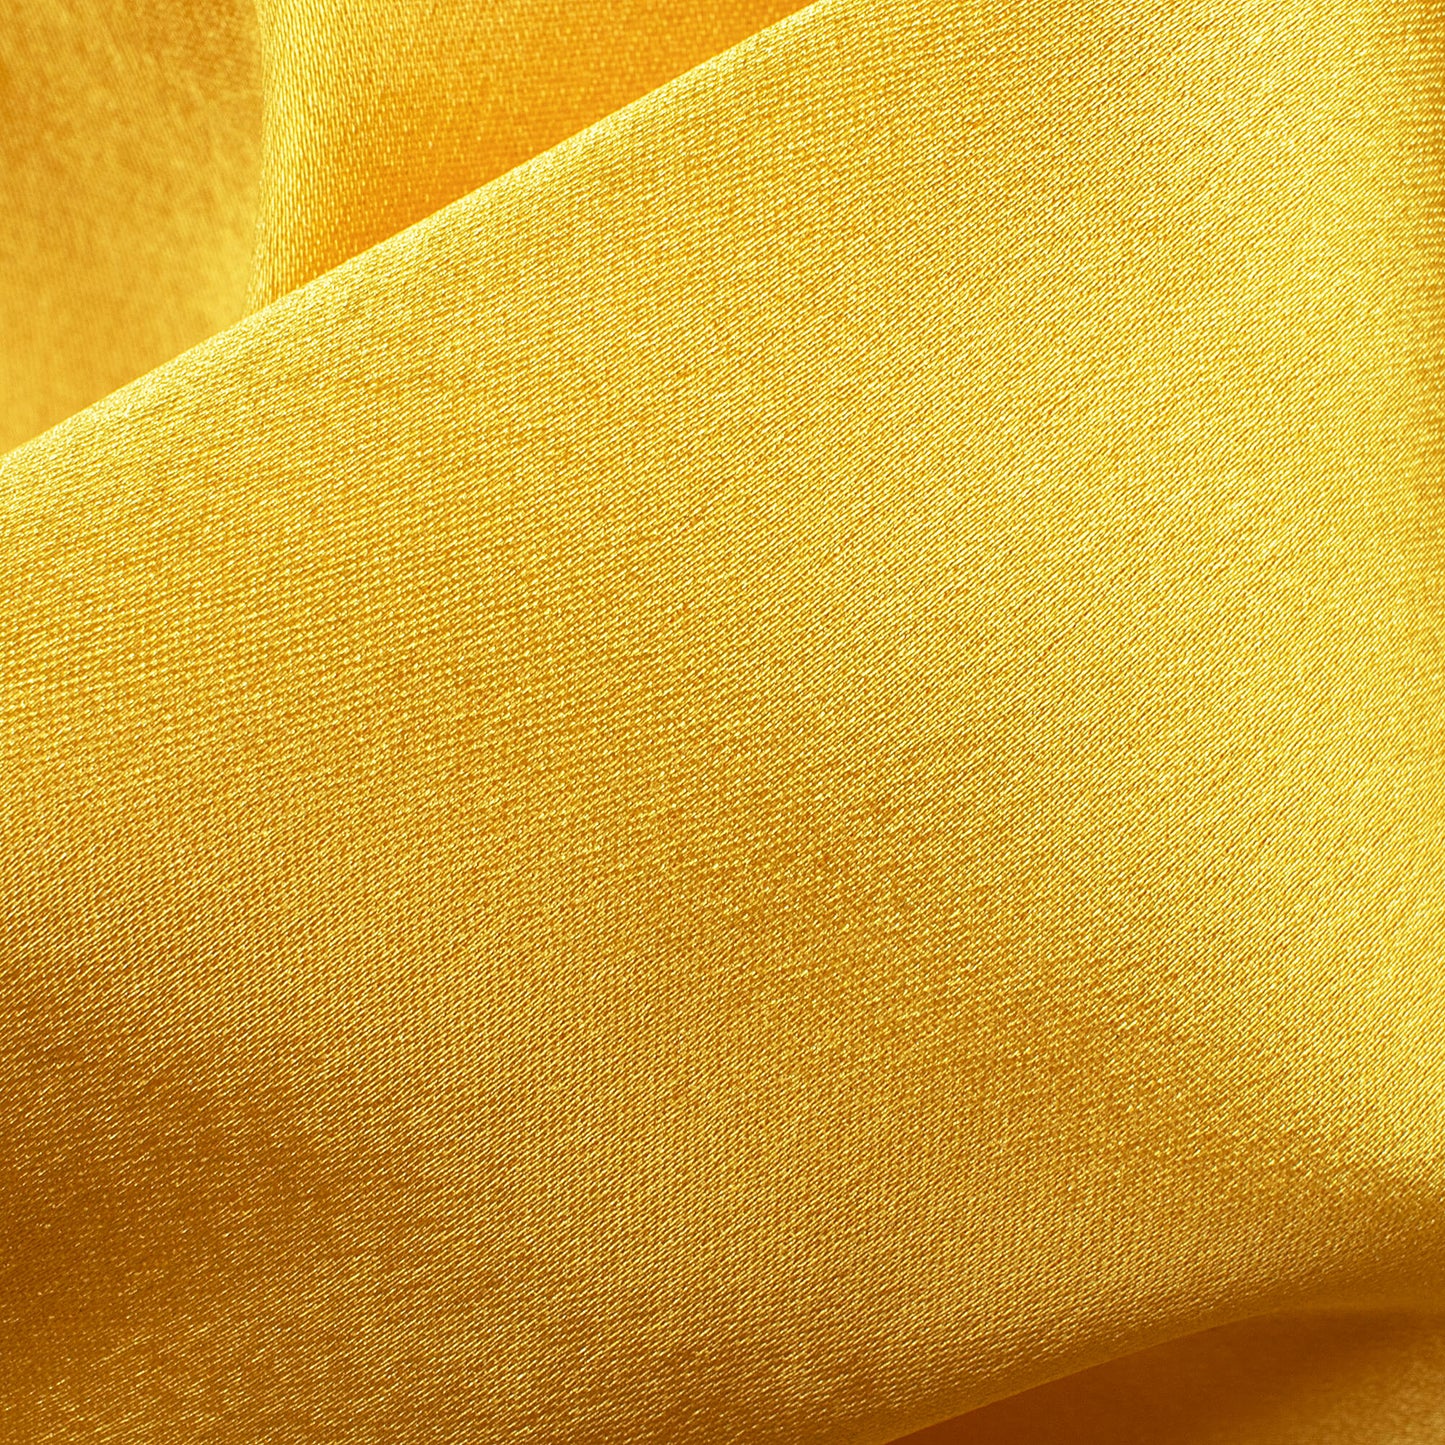 Butter Yellow Plain Japan Satin Fabric